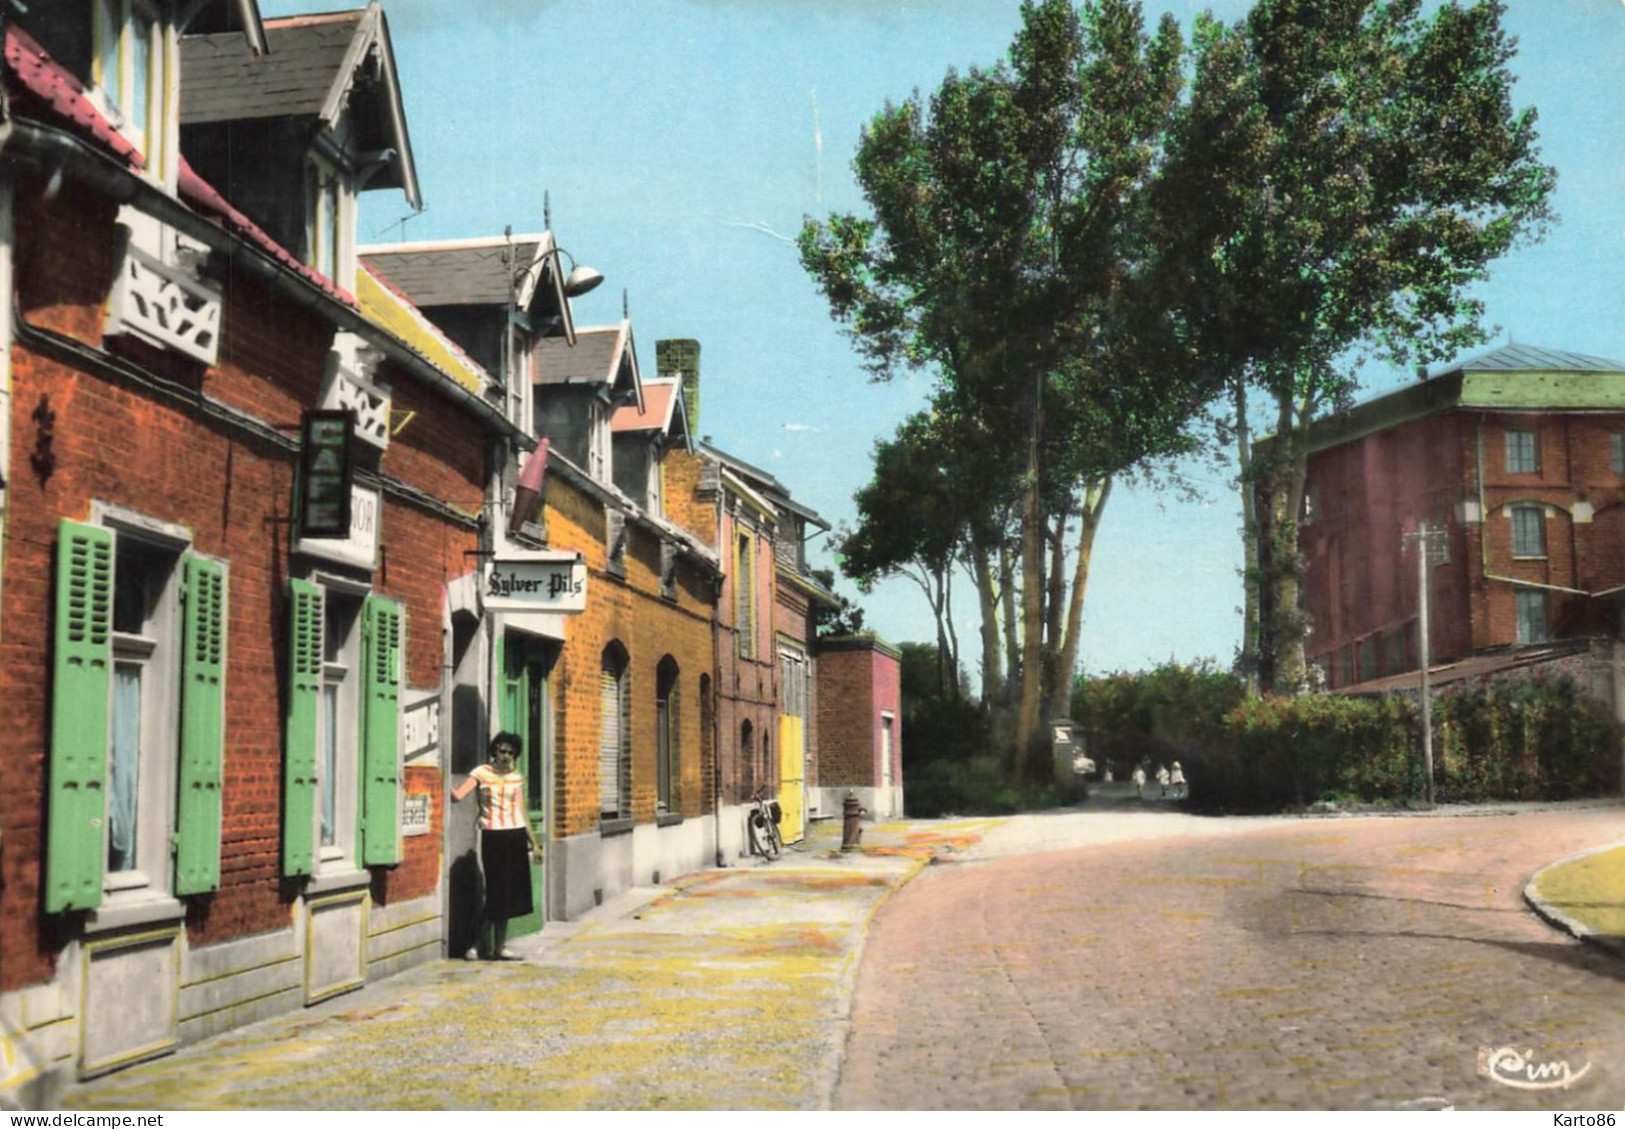 Arleux * Le Moulin , Rue De La Chaussée * Débit De Tabac Tabacs TABAC * Commerce * Villageois - Arleux